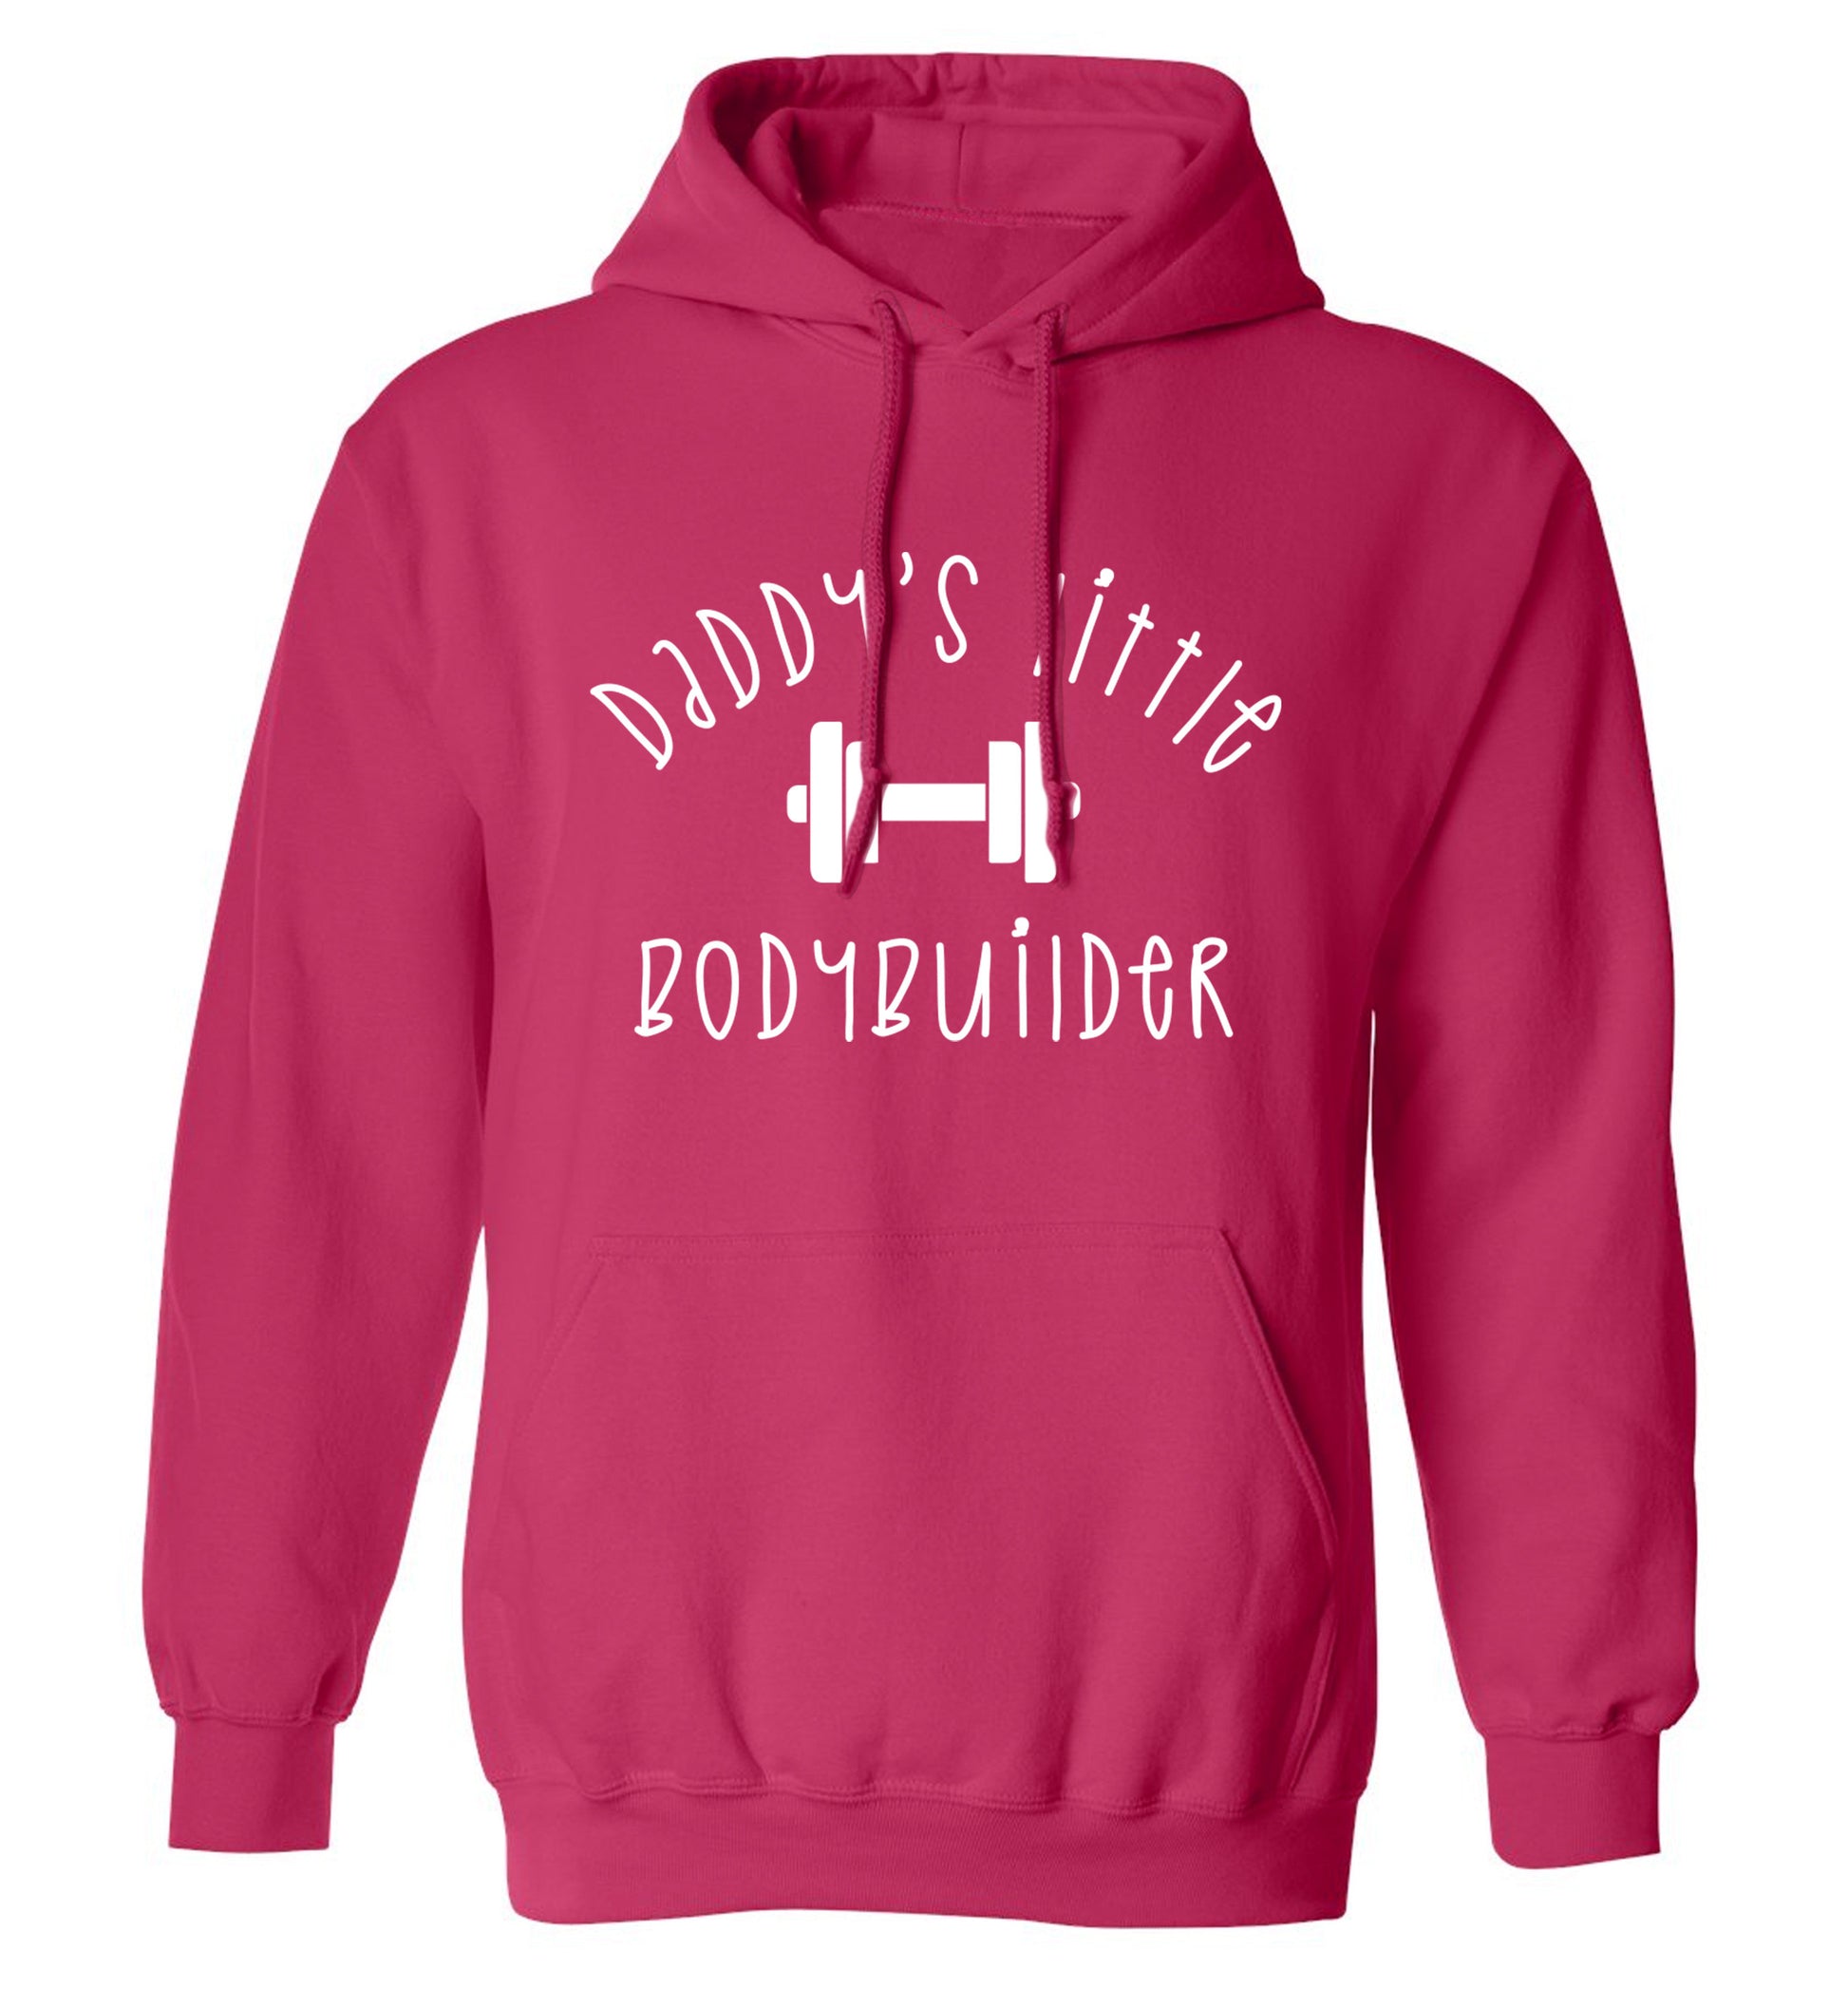 Daddy's little bodybuilder adults unisex pink hoodie 2XL